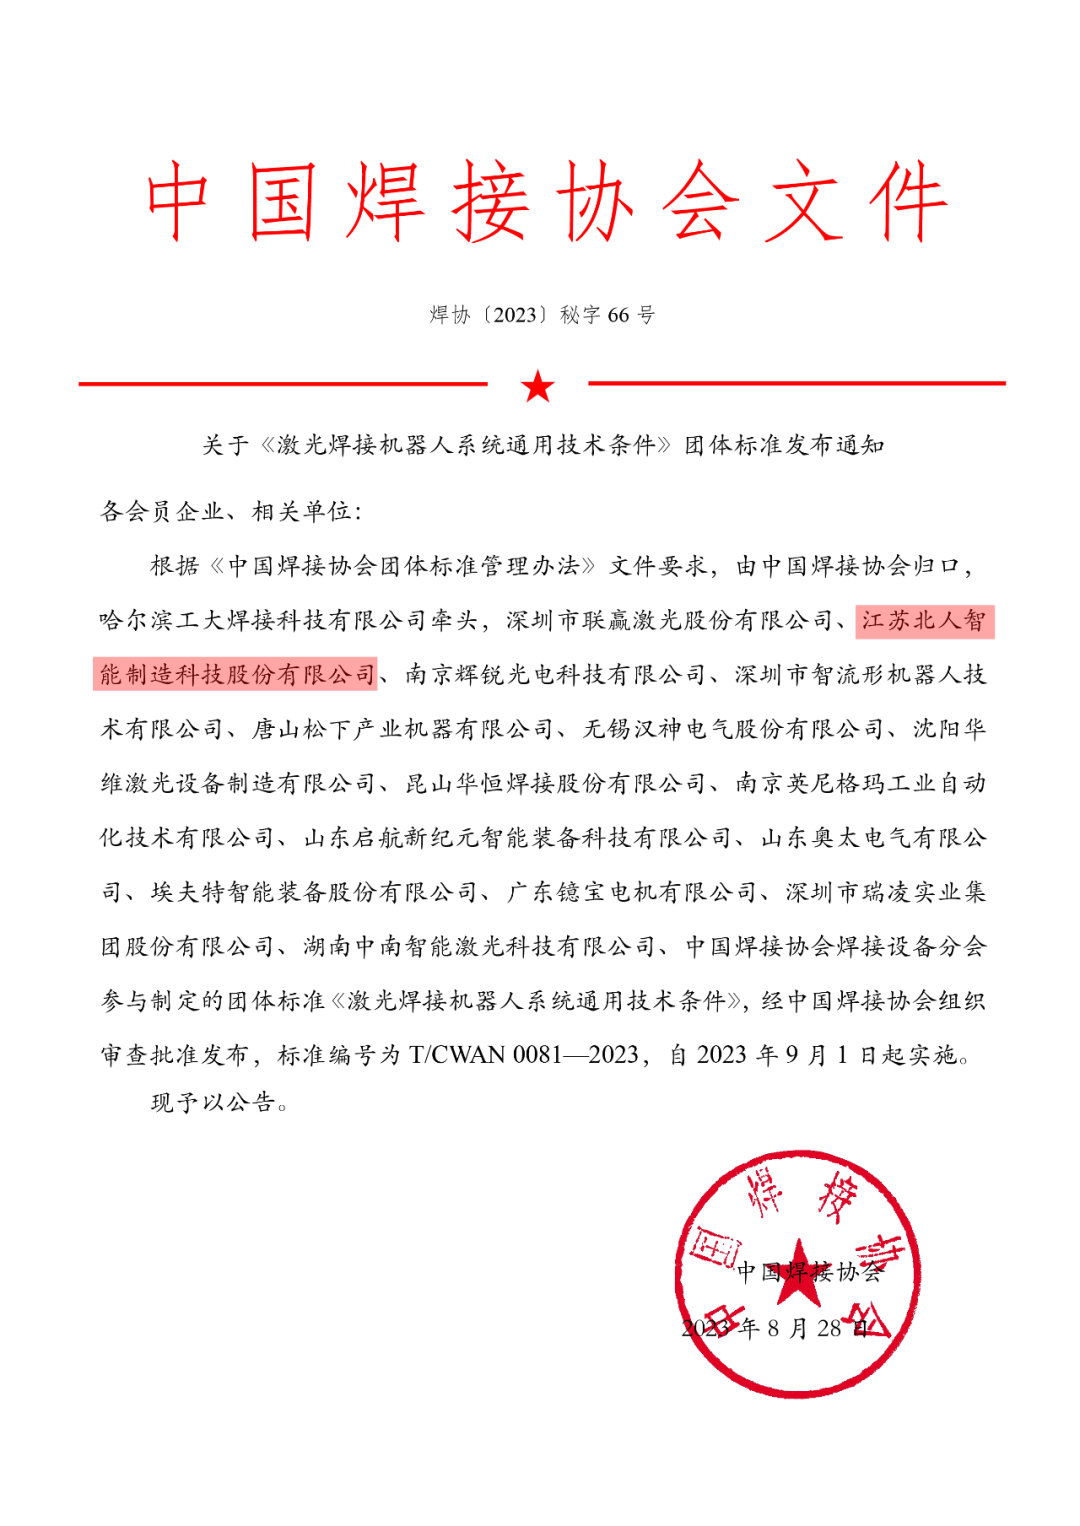 江苏北人参与制定的《激光焊接机器人系统通用技术条件》团体标准正式发布实施